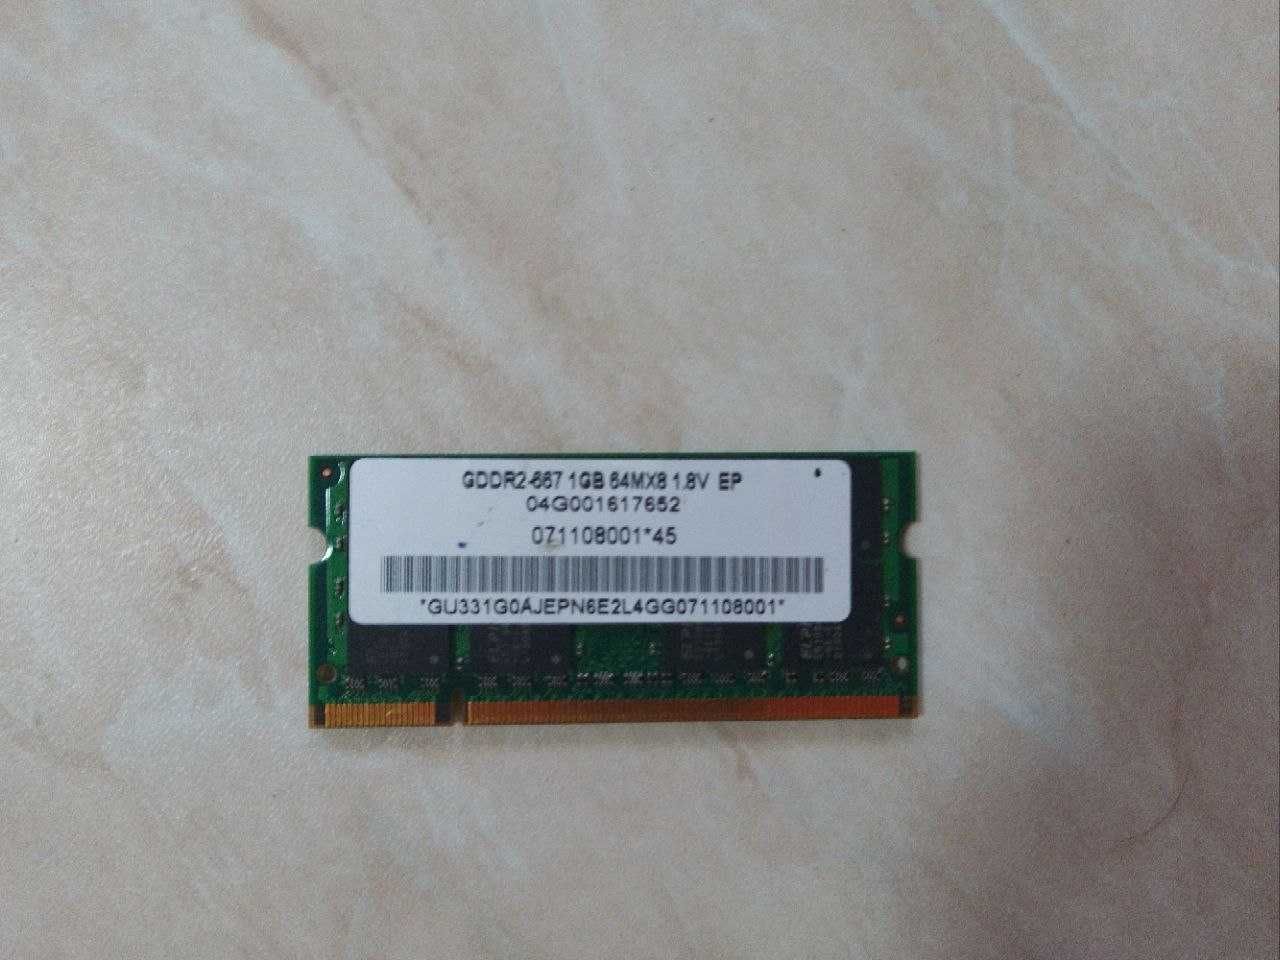 Оперативна пам'ять  Hynix 1GB GDDR2-667Мгц, 64MX8 1.8V EP